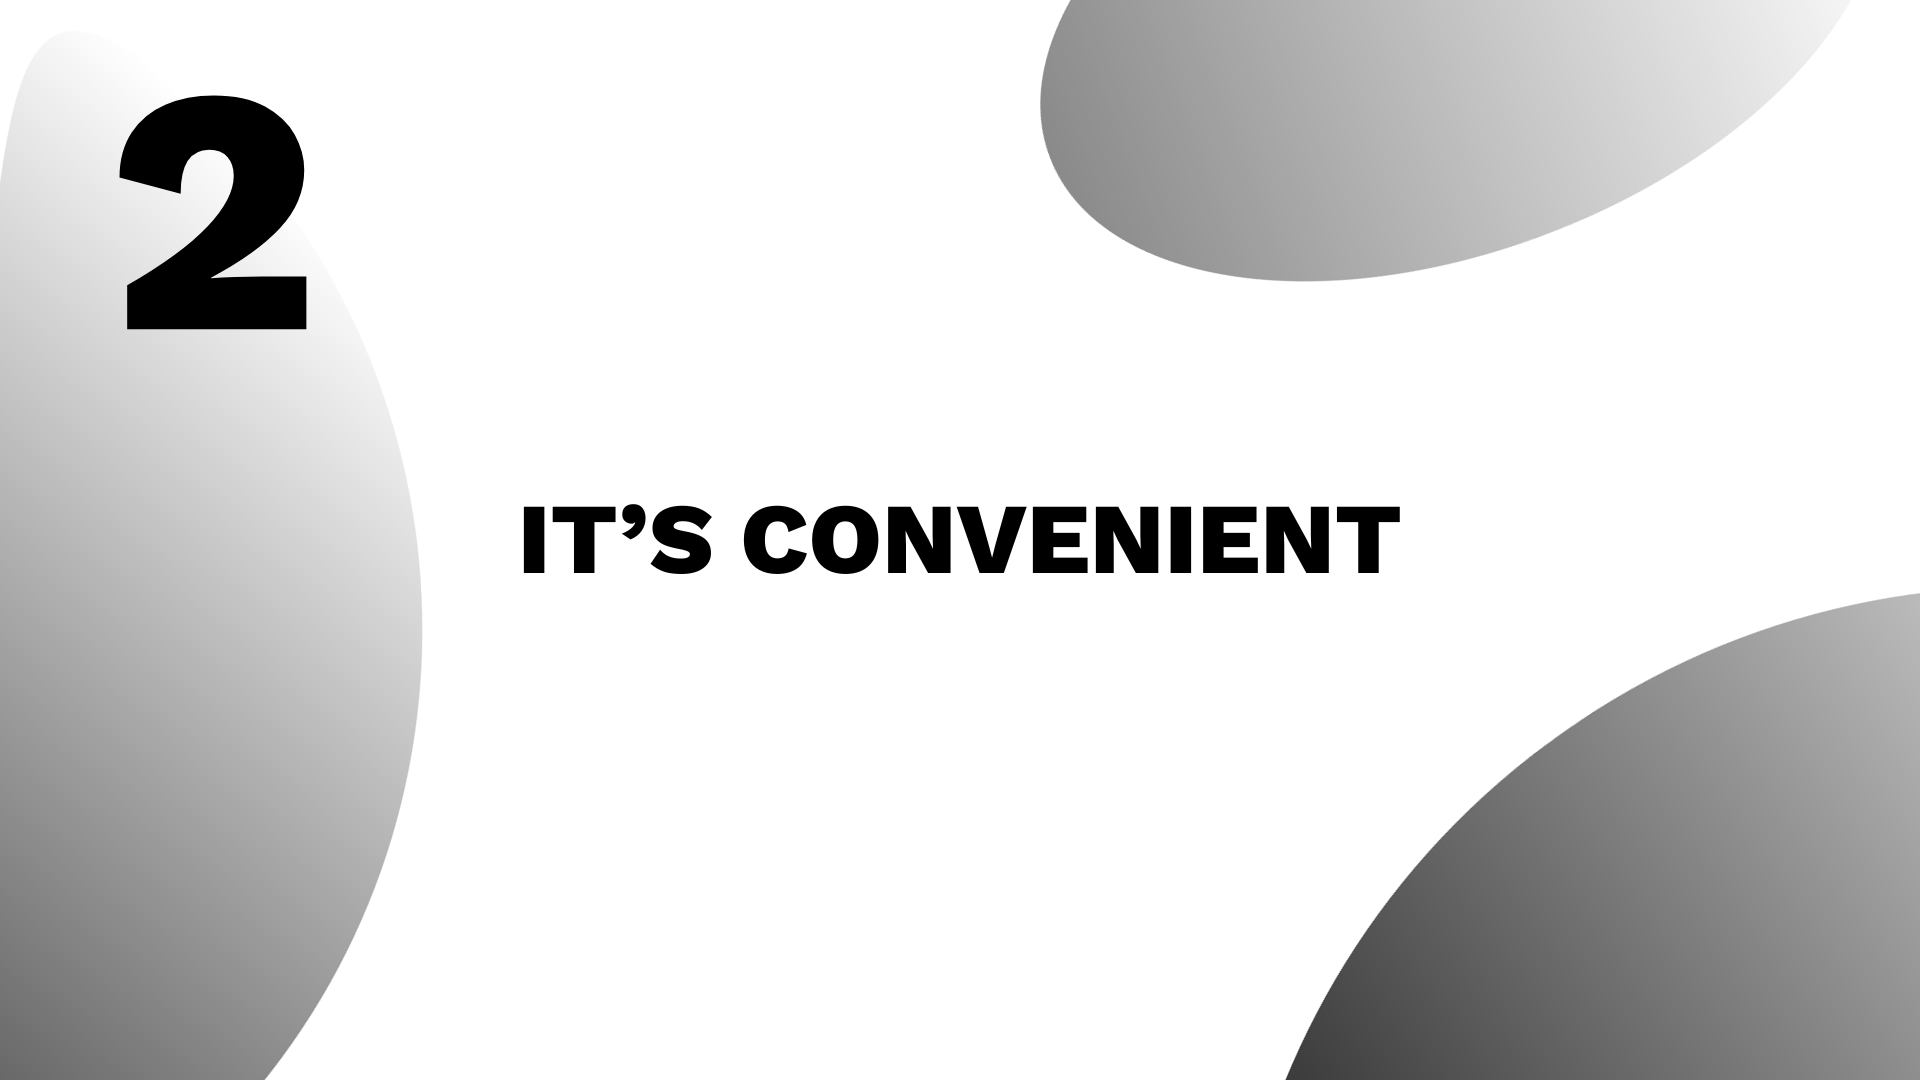 It’s convenient